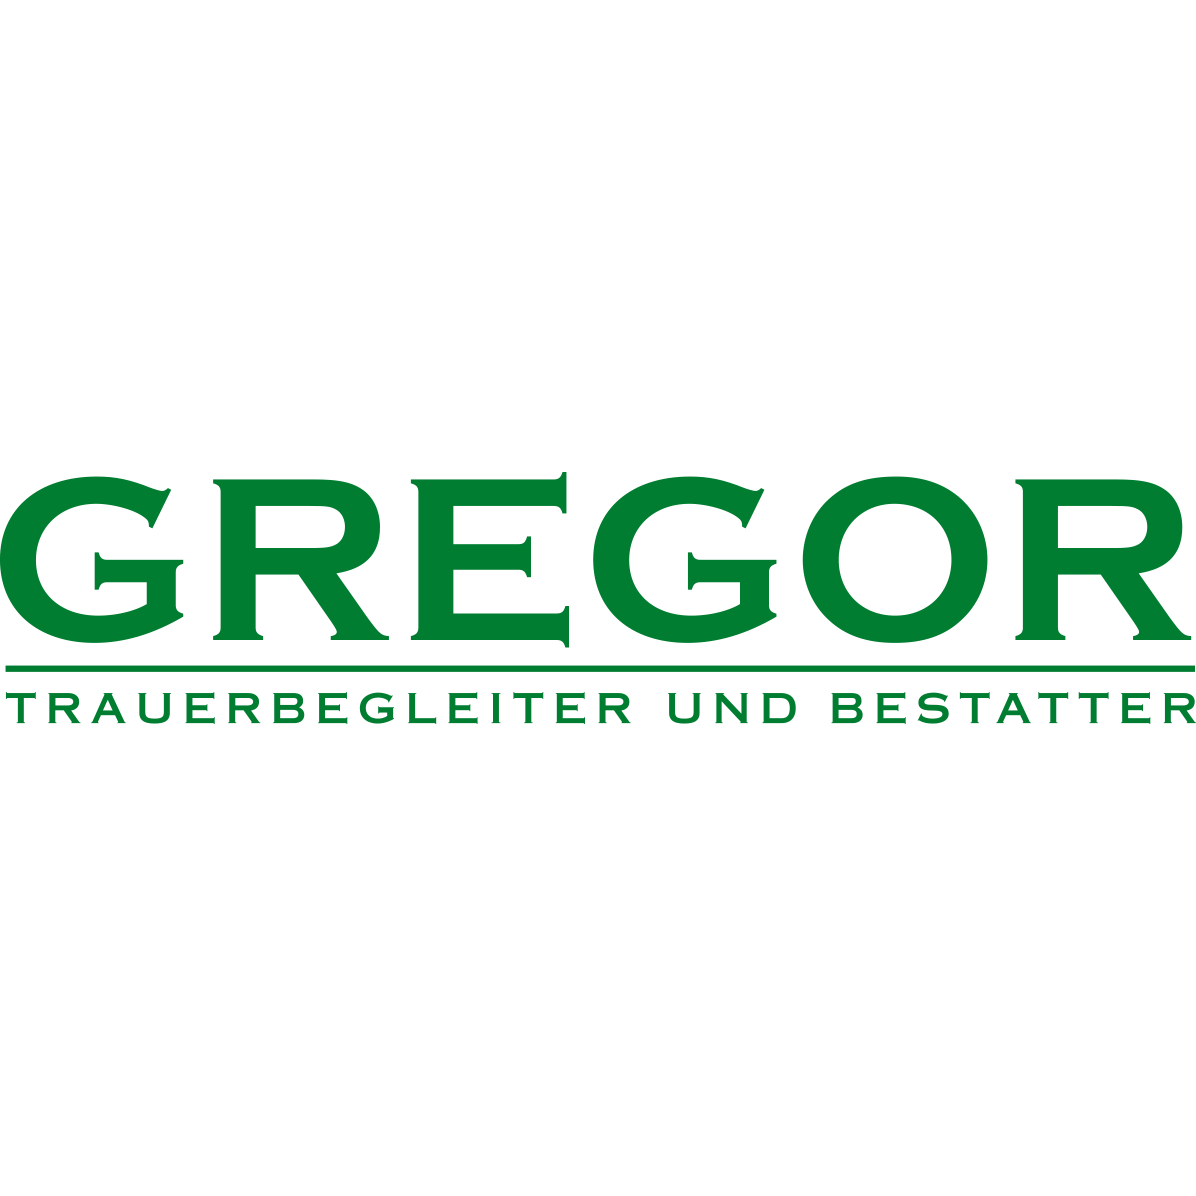 Trauerbegleitung und Bestattung Jürgen Gregor GmbH in Heddesheim Logo